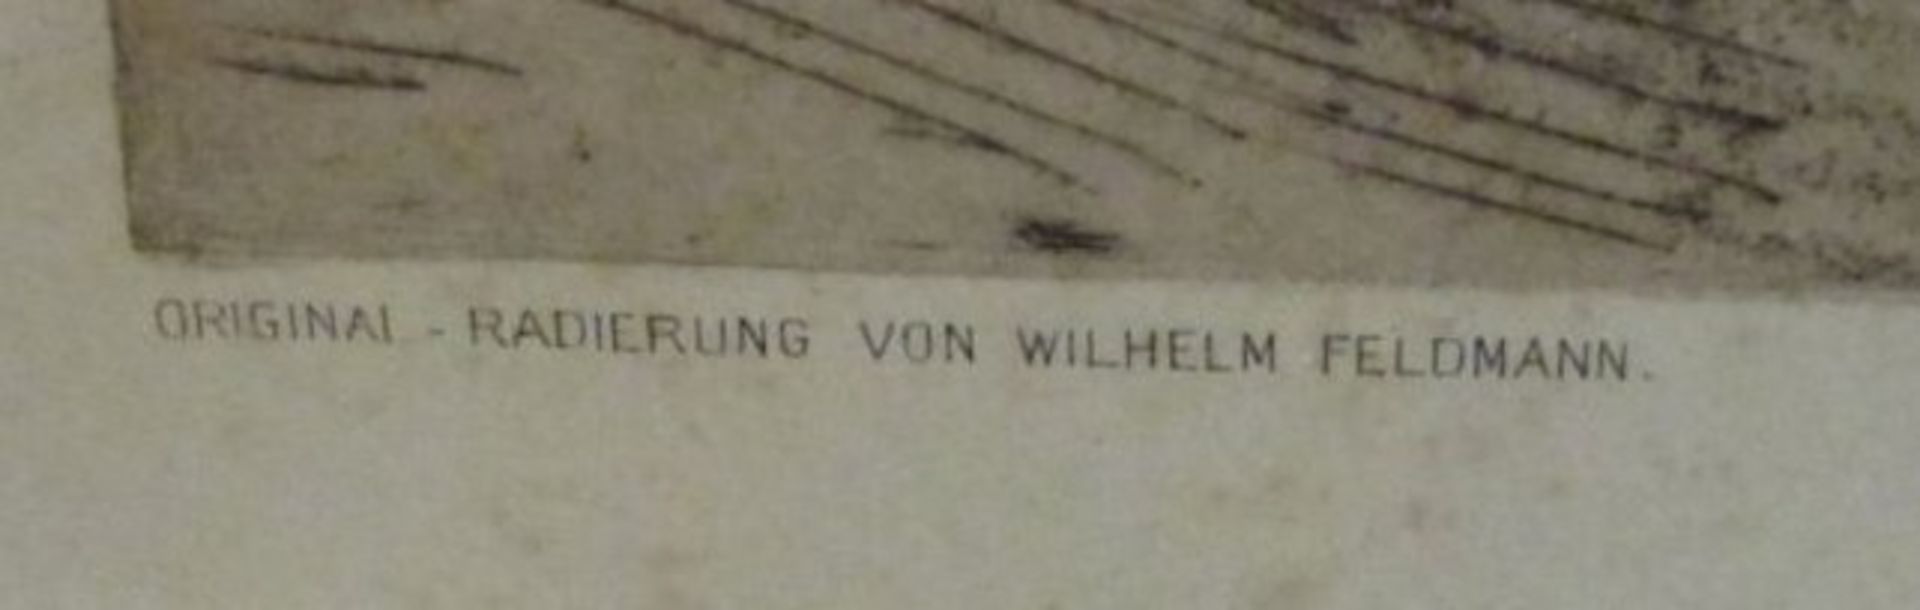 gr. Radierung von Wilhem Feldmann, gedruck von Felsing Berlin, ungerahmt, BG 60 x 75cm. - Bild 3 aus 3